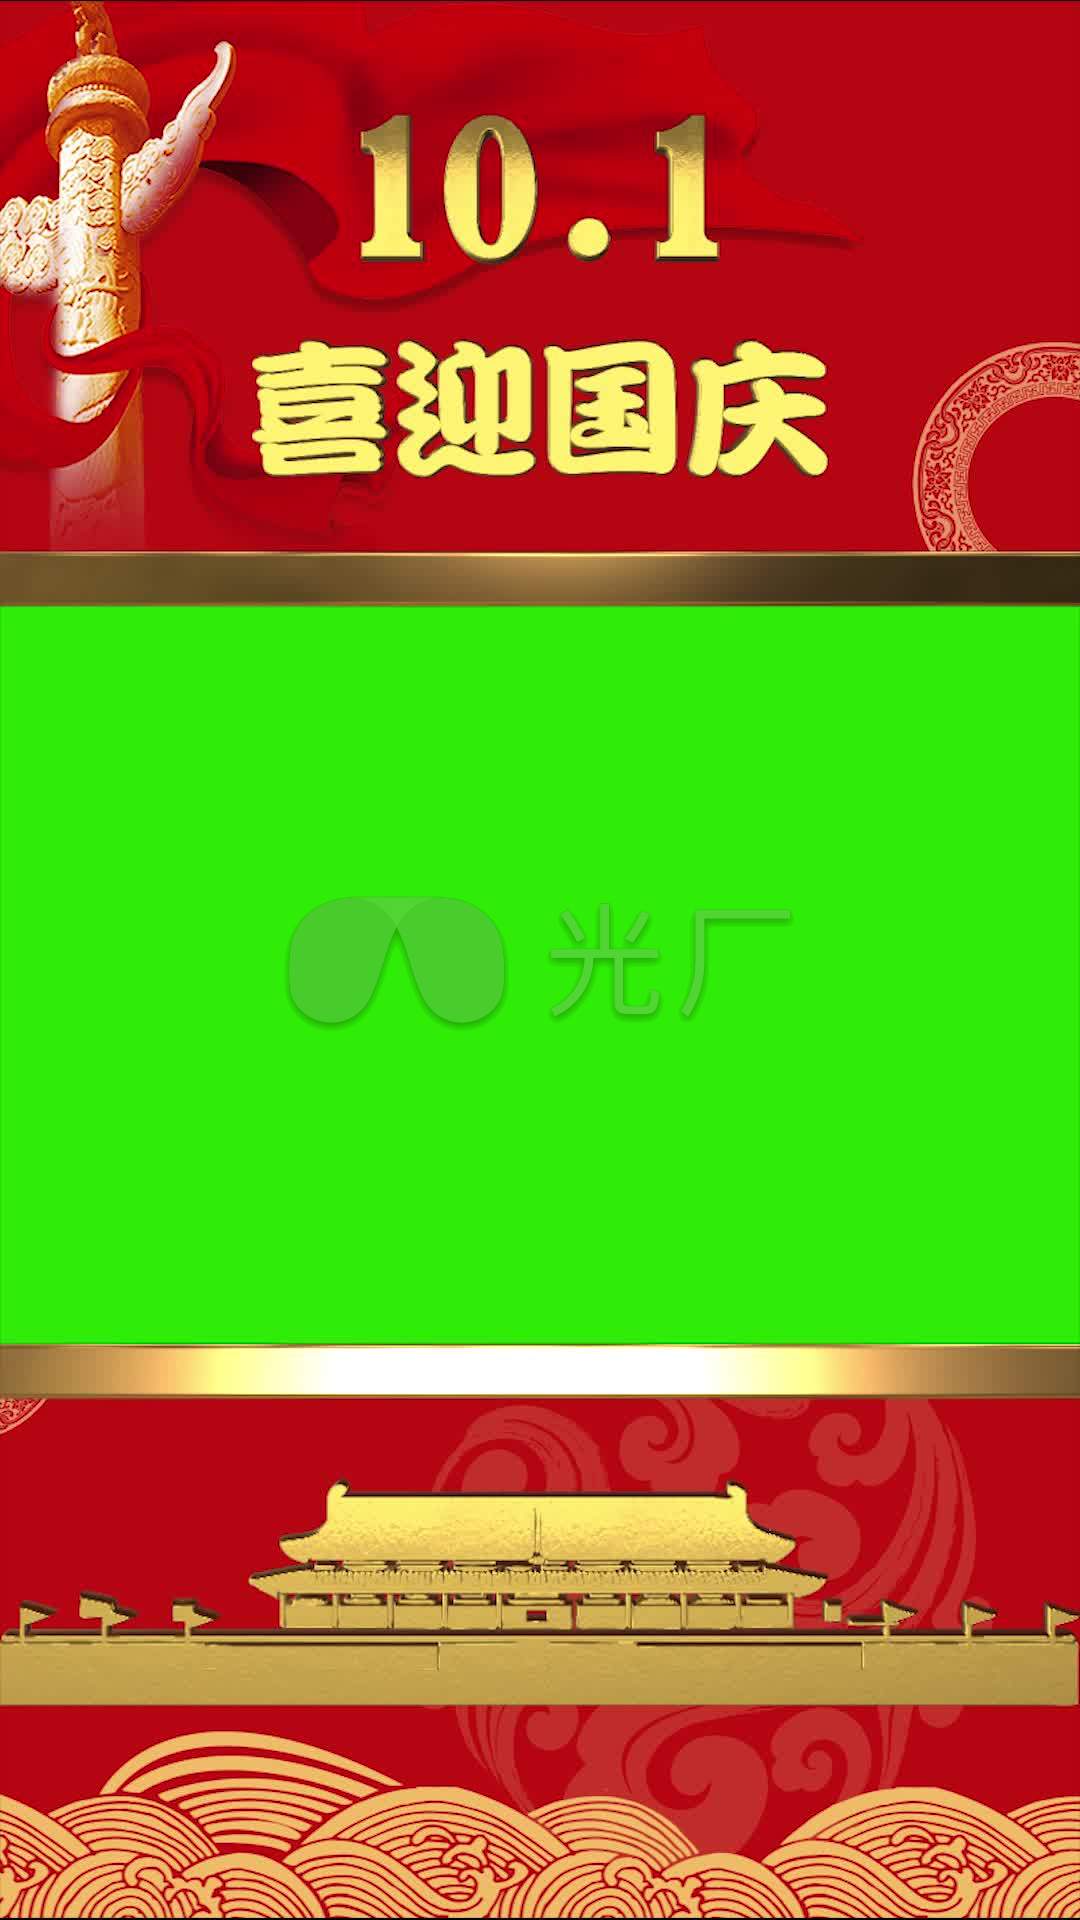 建国国庆节10.1十月一抖音竖屏背景版